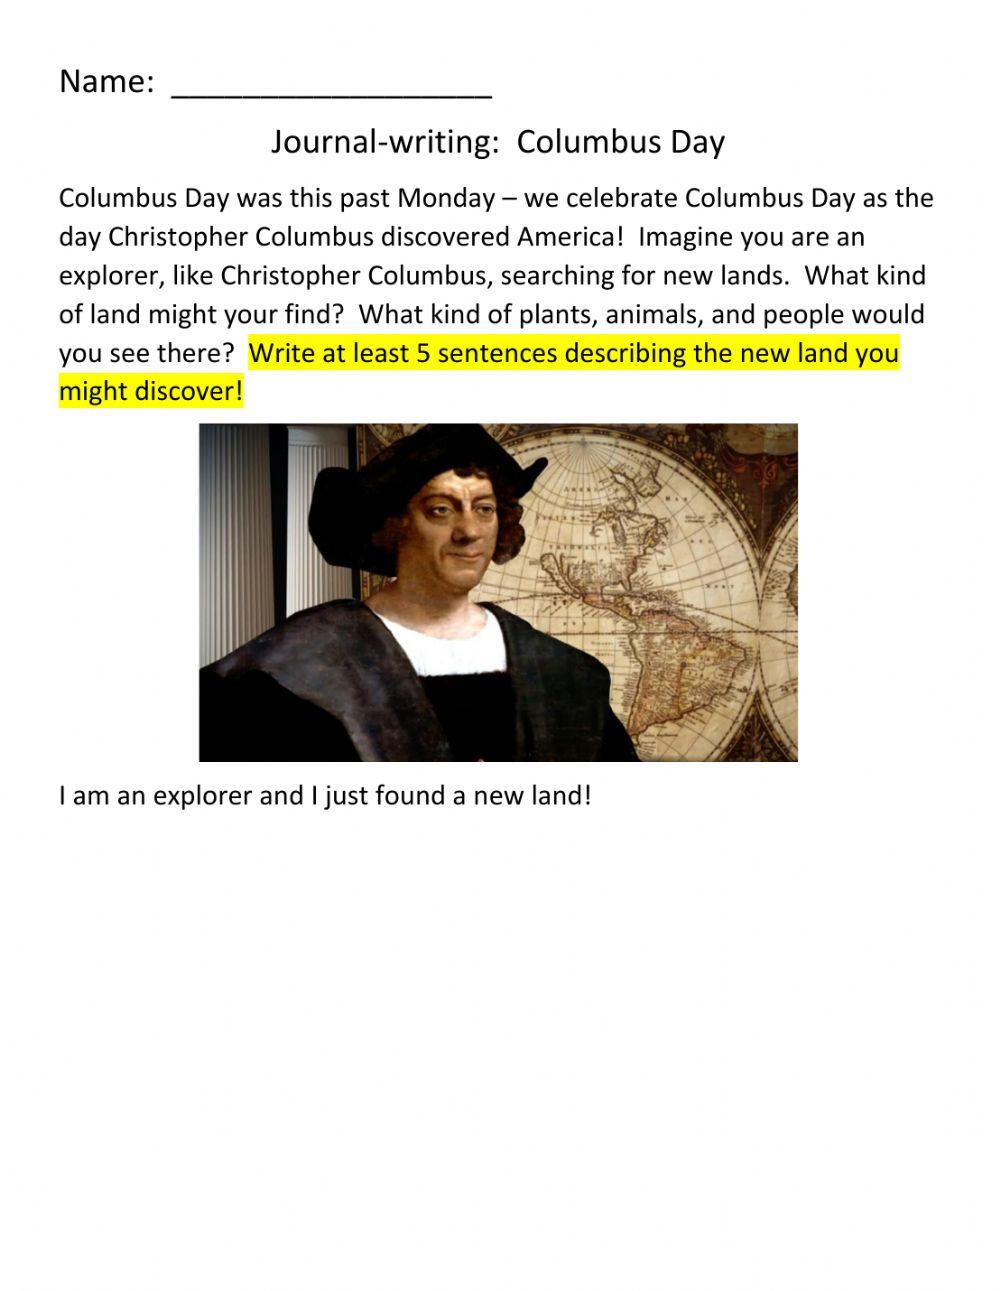 JOURNAL-WRITING:  Columbus Day